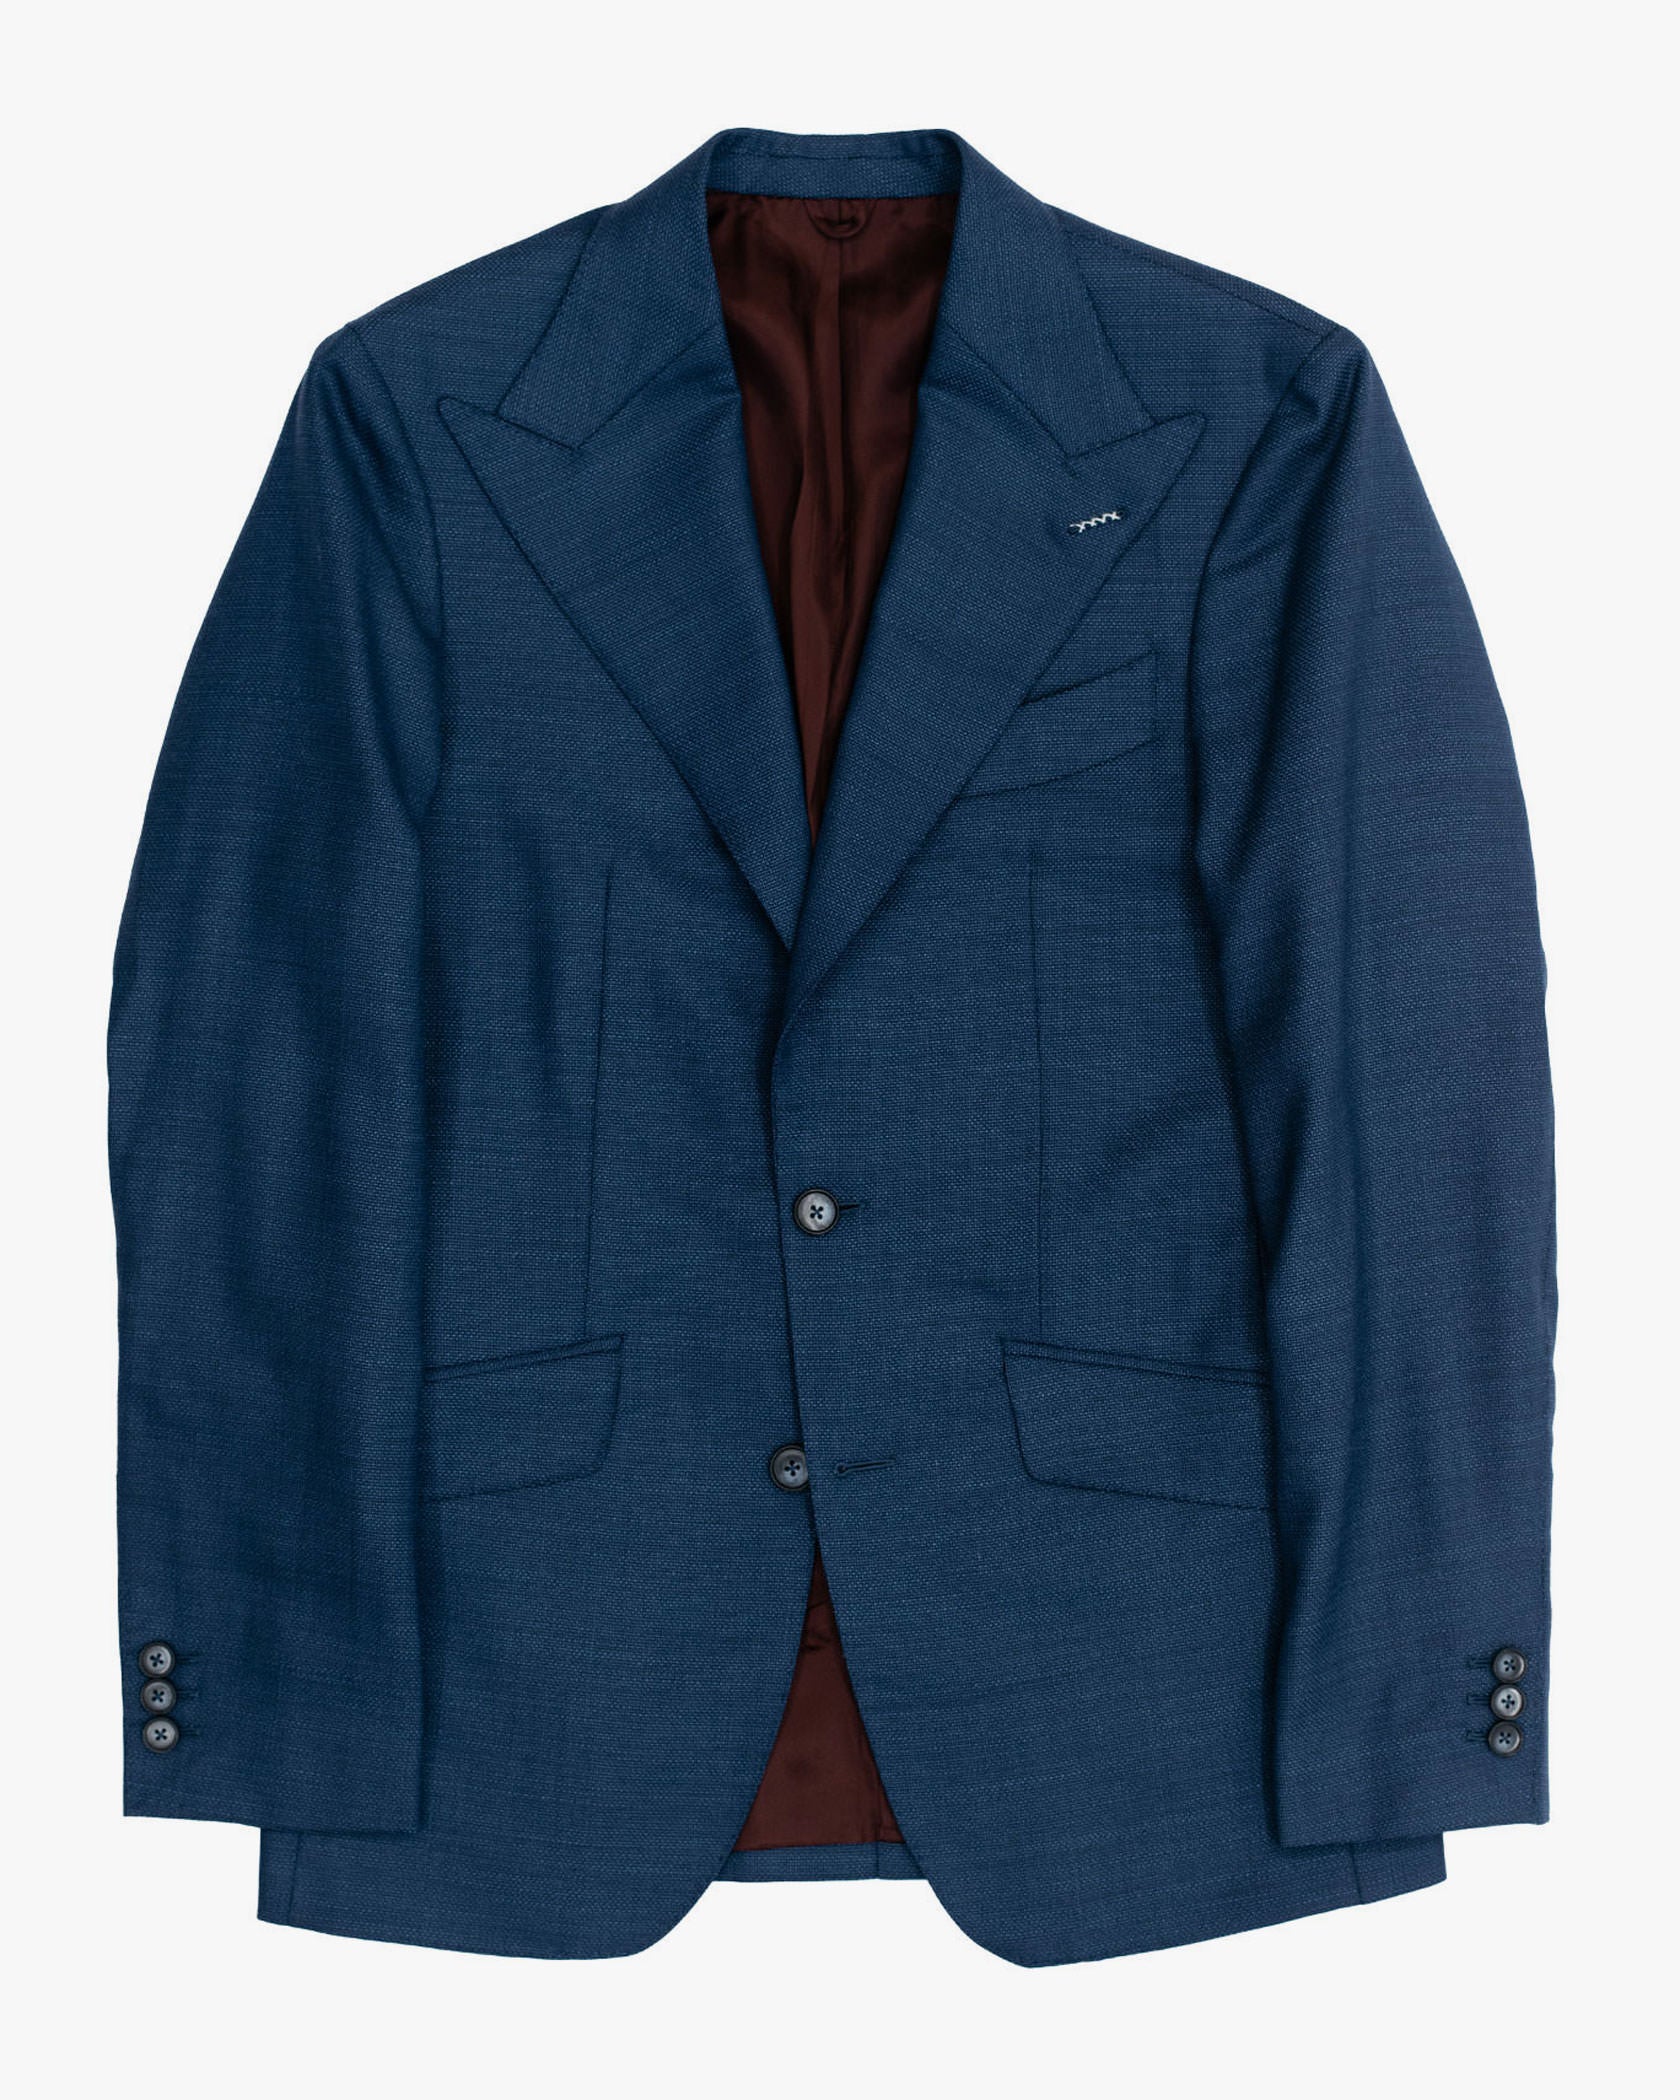 The Standard Royal Blue Suit